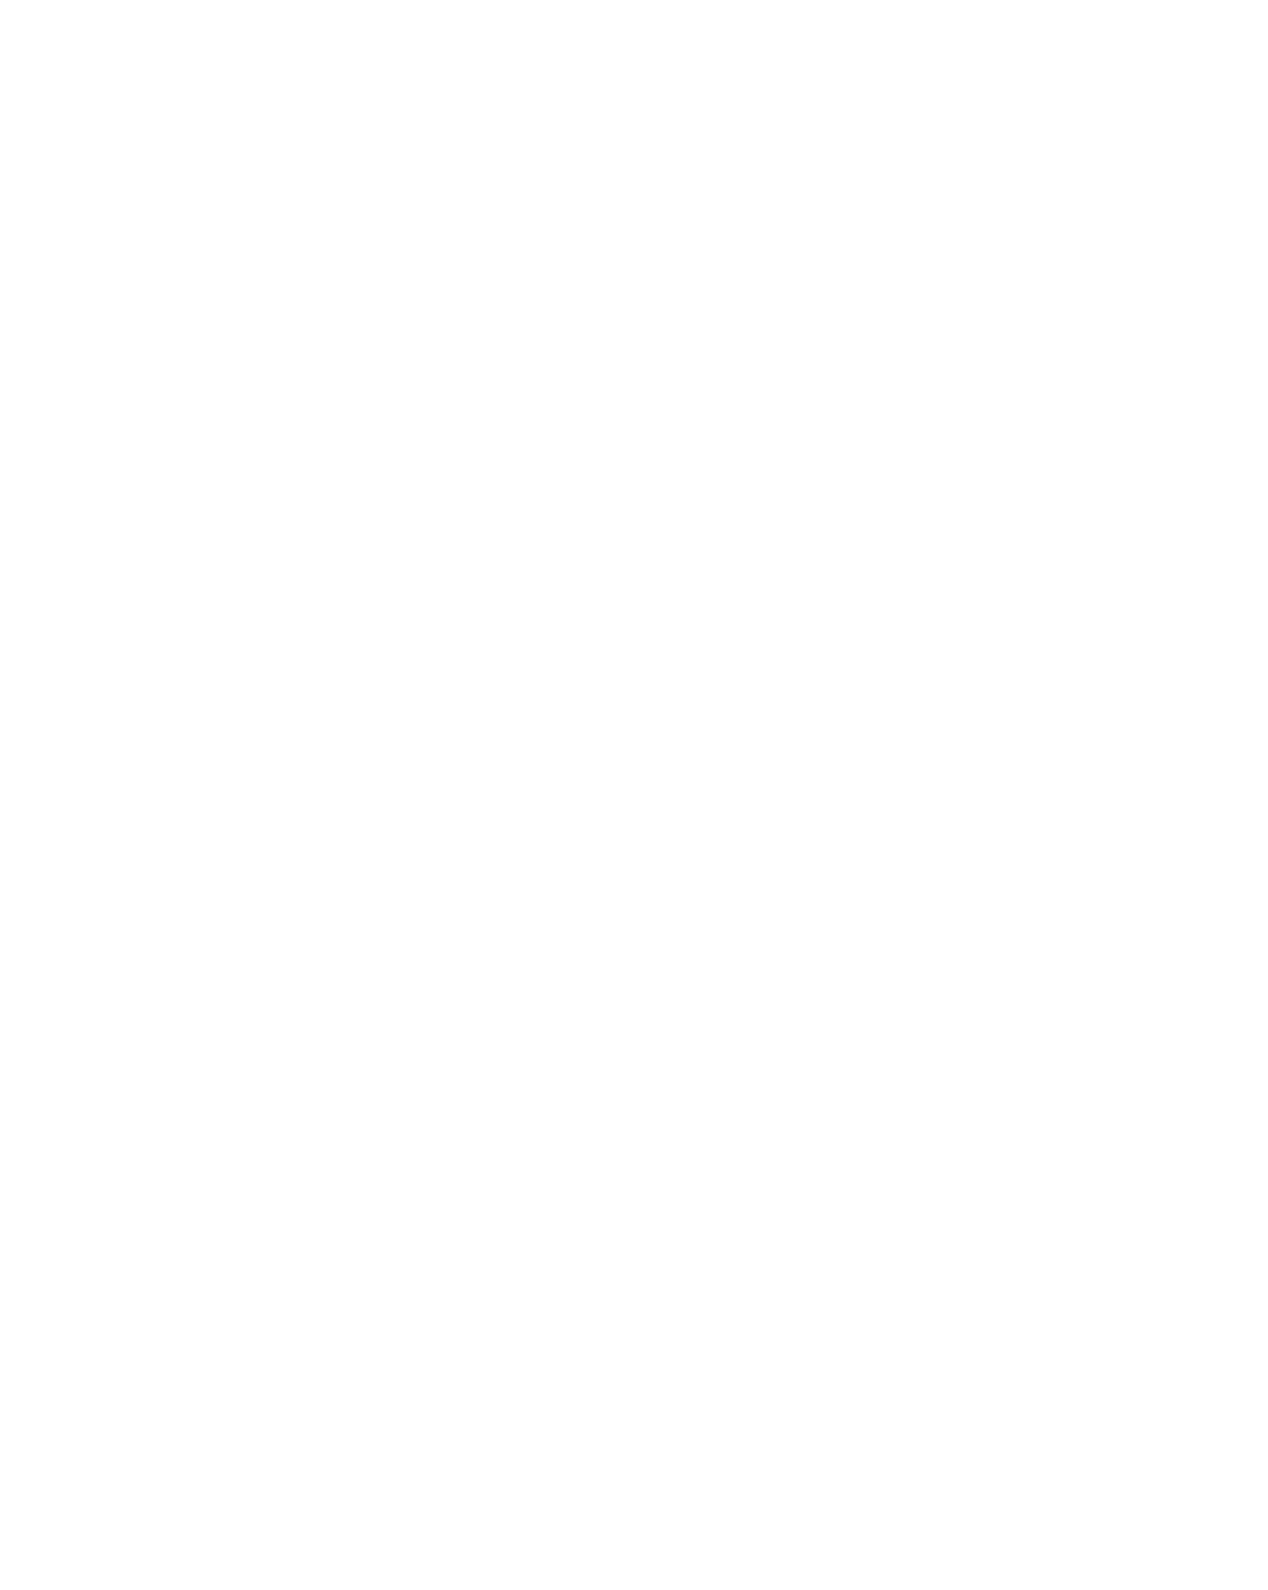 Ventas logo for dark backgrounds (transparent PNG)